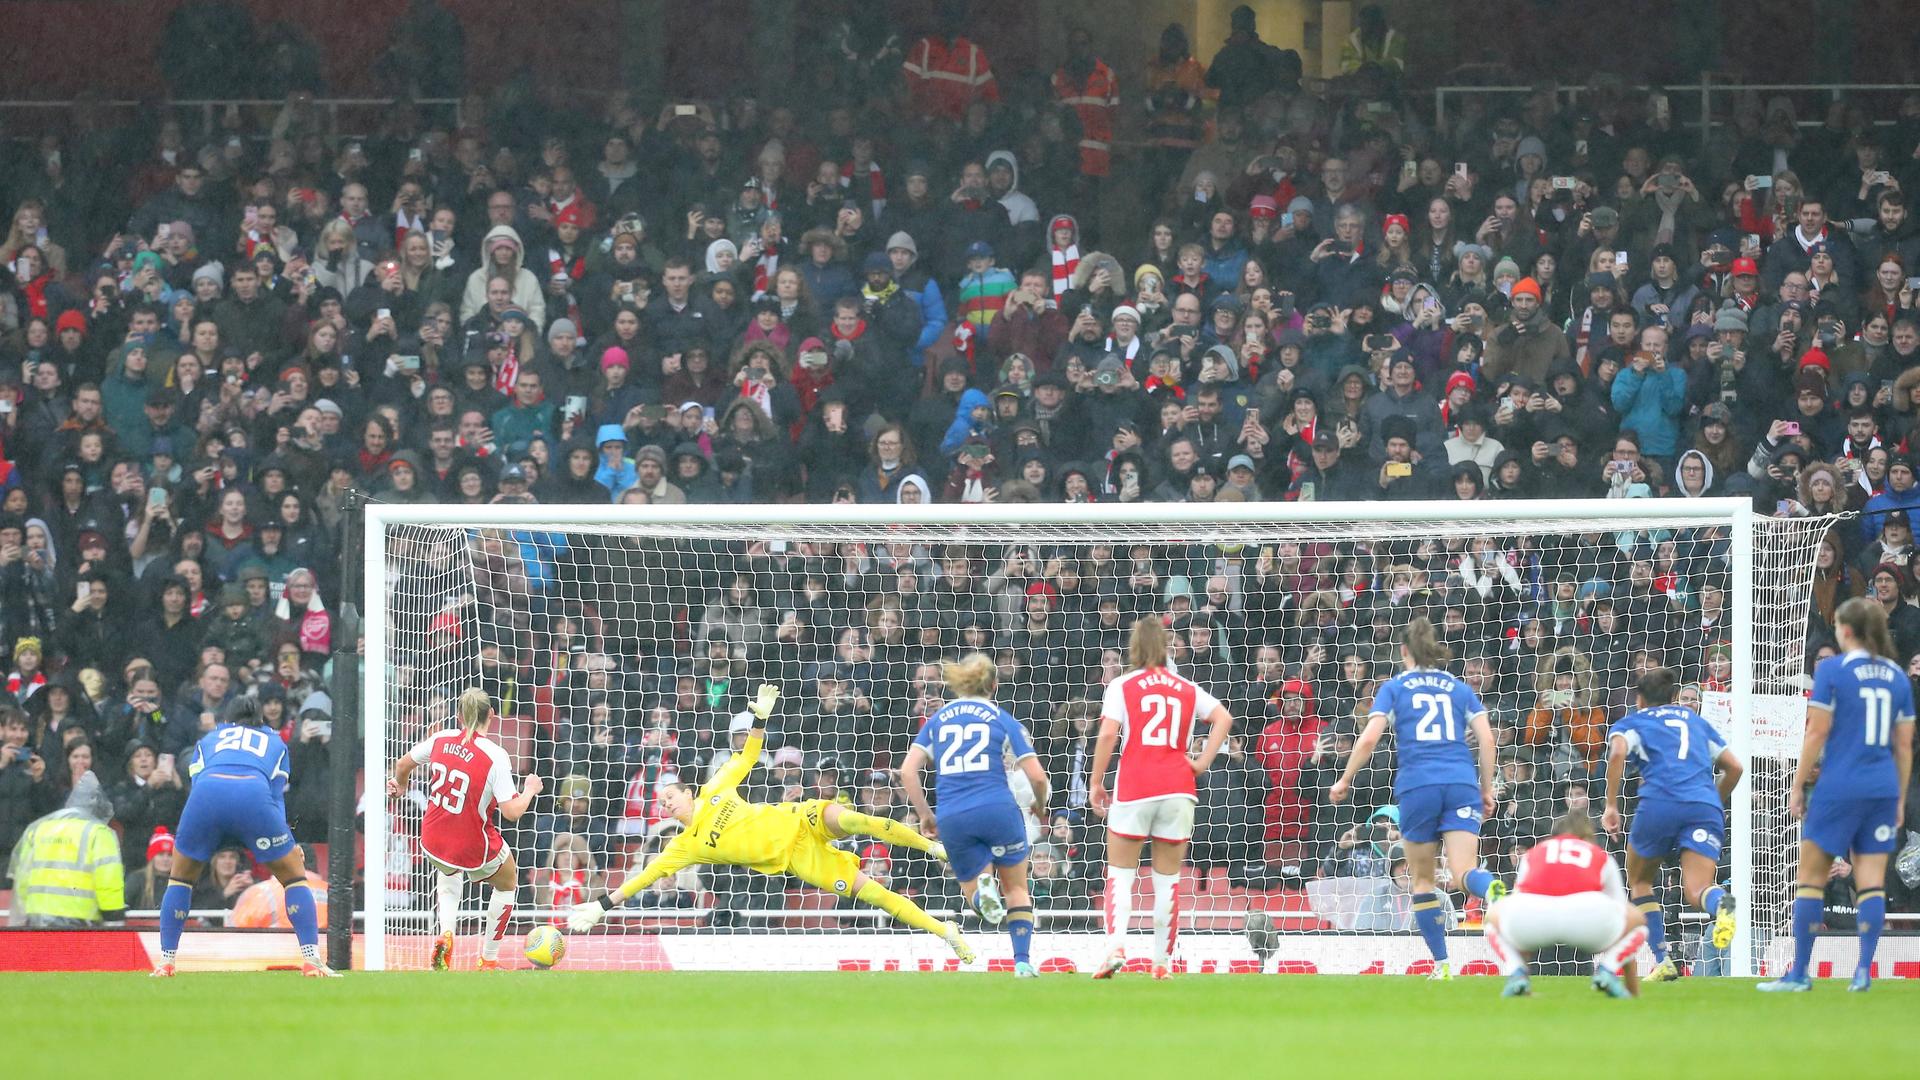 Spielszene: Die Torhüterin von Chelsea streckt sich nach einem Ball, der auf's Tor geht. Im Hintergrund eine vollbesetzte Tribüne.